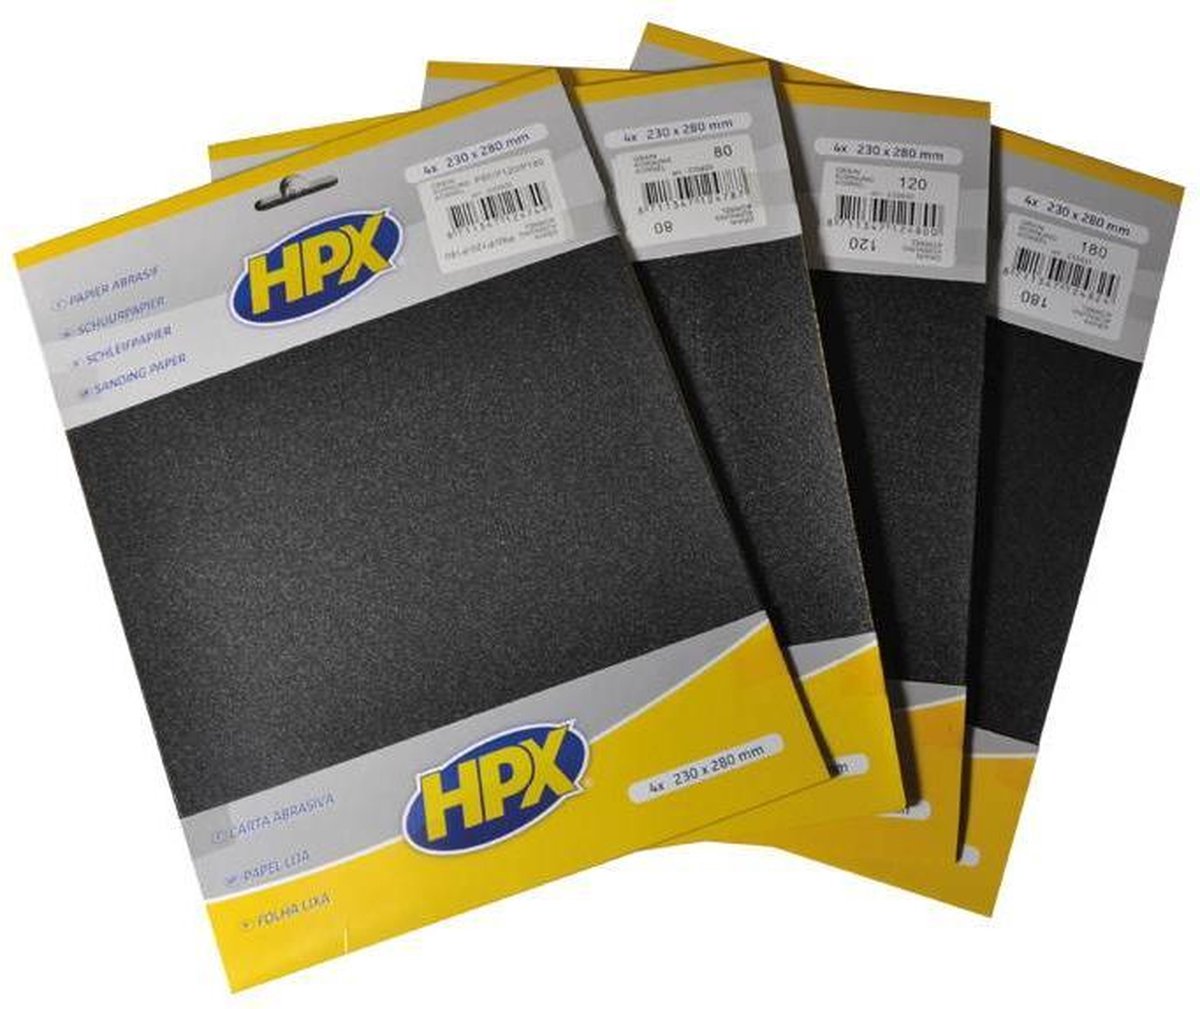 Ambassadeur Voorbijganger Tact HPX schuurpapier P1200 x 4 stuks - 230 x 280 mm | bol.com